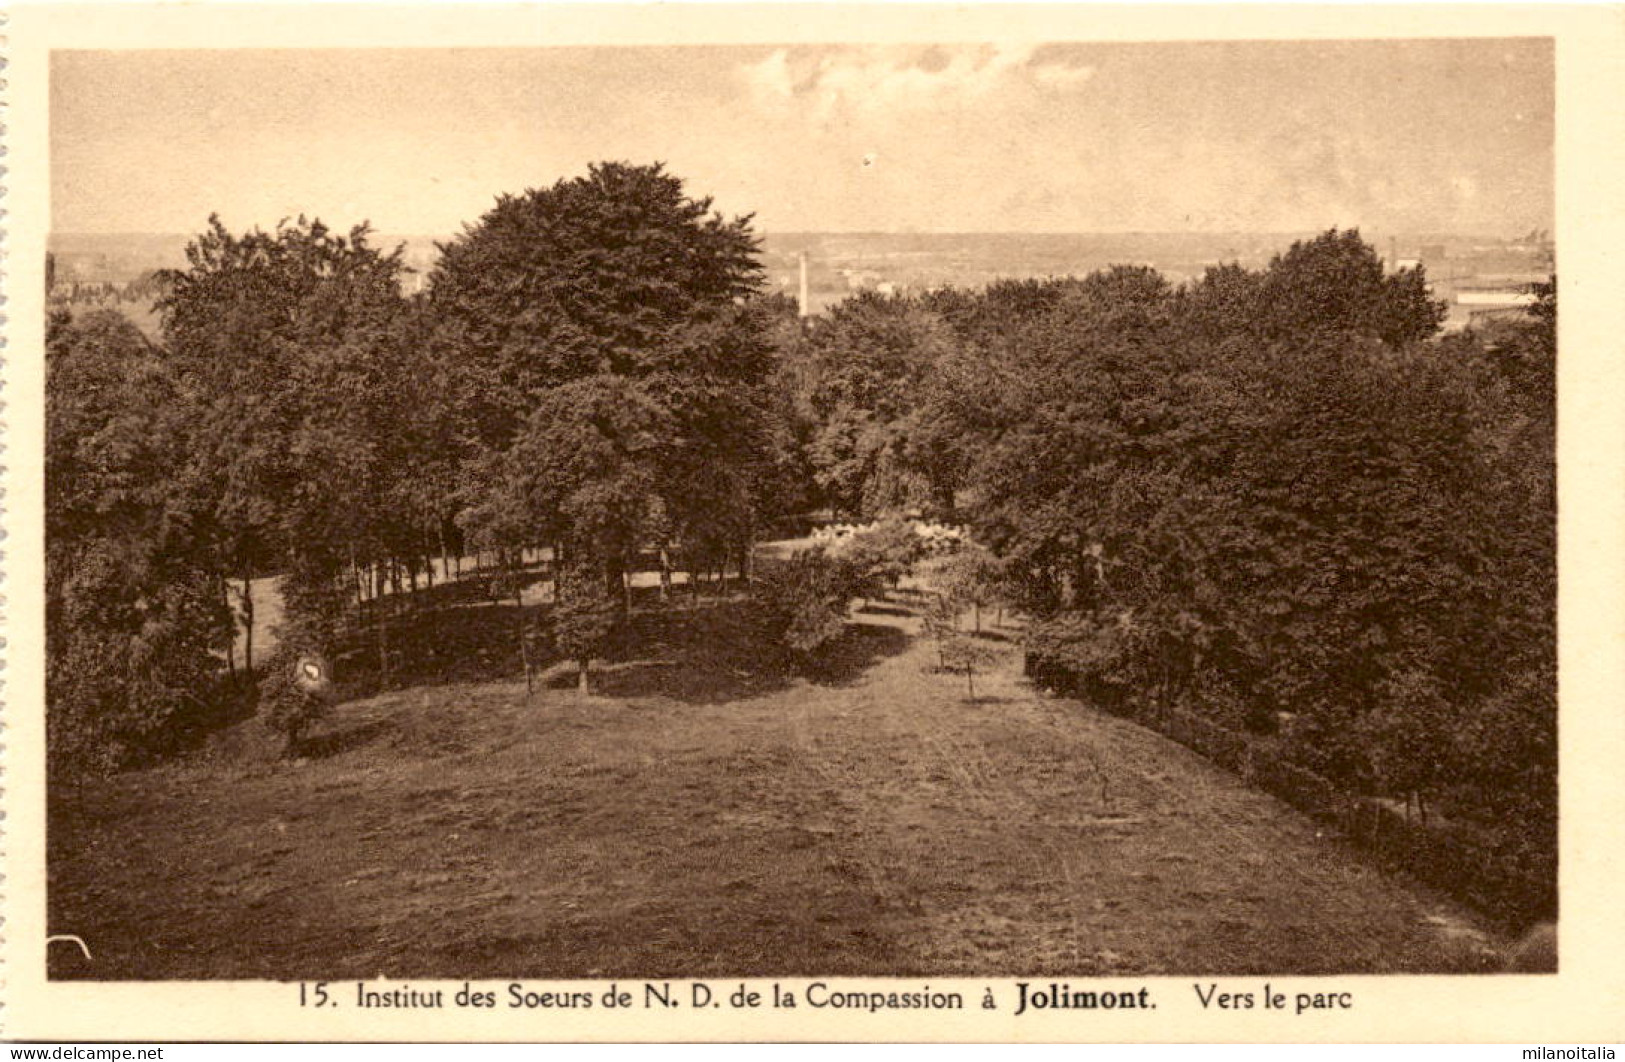 Institut Des Soeurs De N.D. De La Compassion à Jolimont - Vers Le Parc (15) - La Louvière